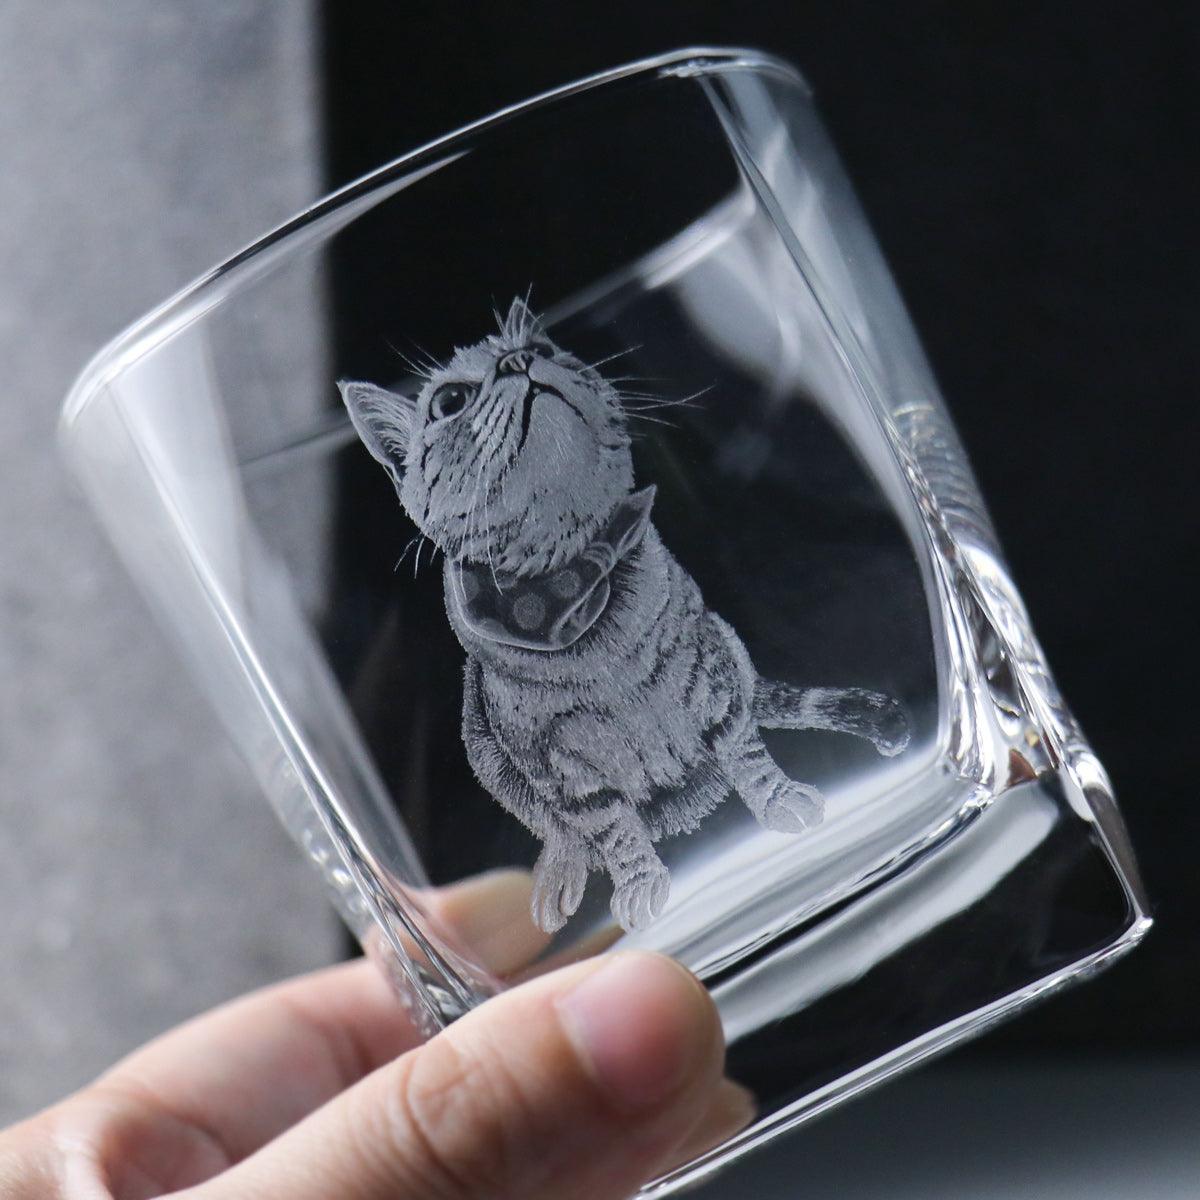 295cc【寵物客製】貓咪 親親杯 威士忌杯手工繪製 貓畫像 - MSA玻璃雕刻